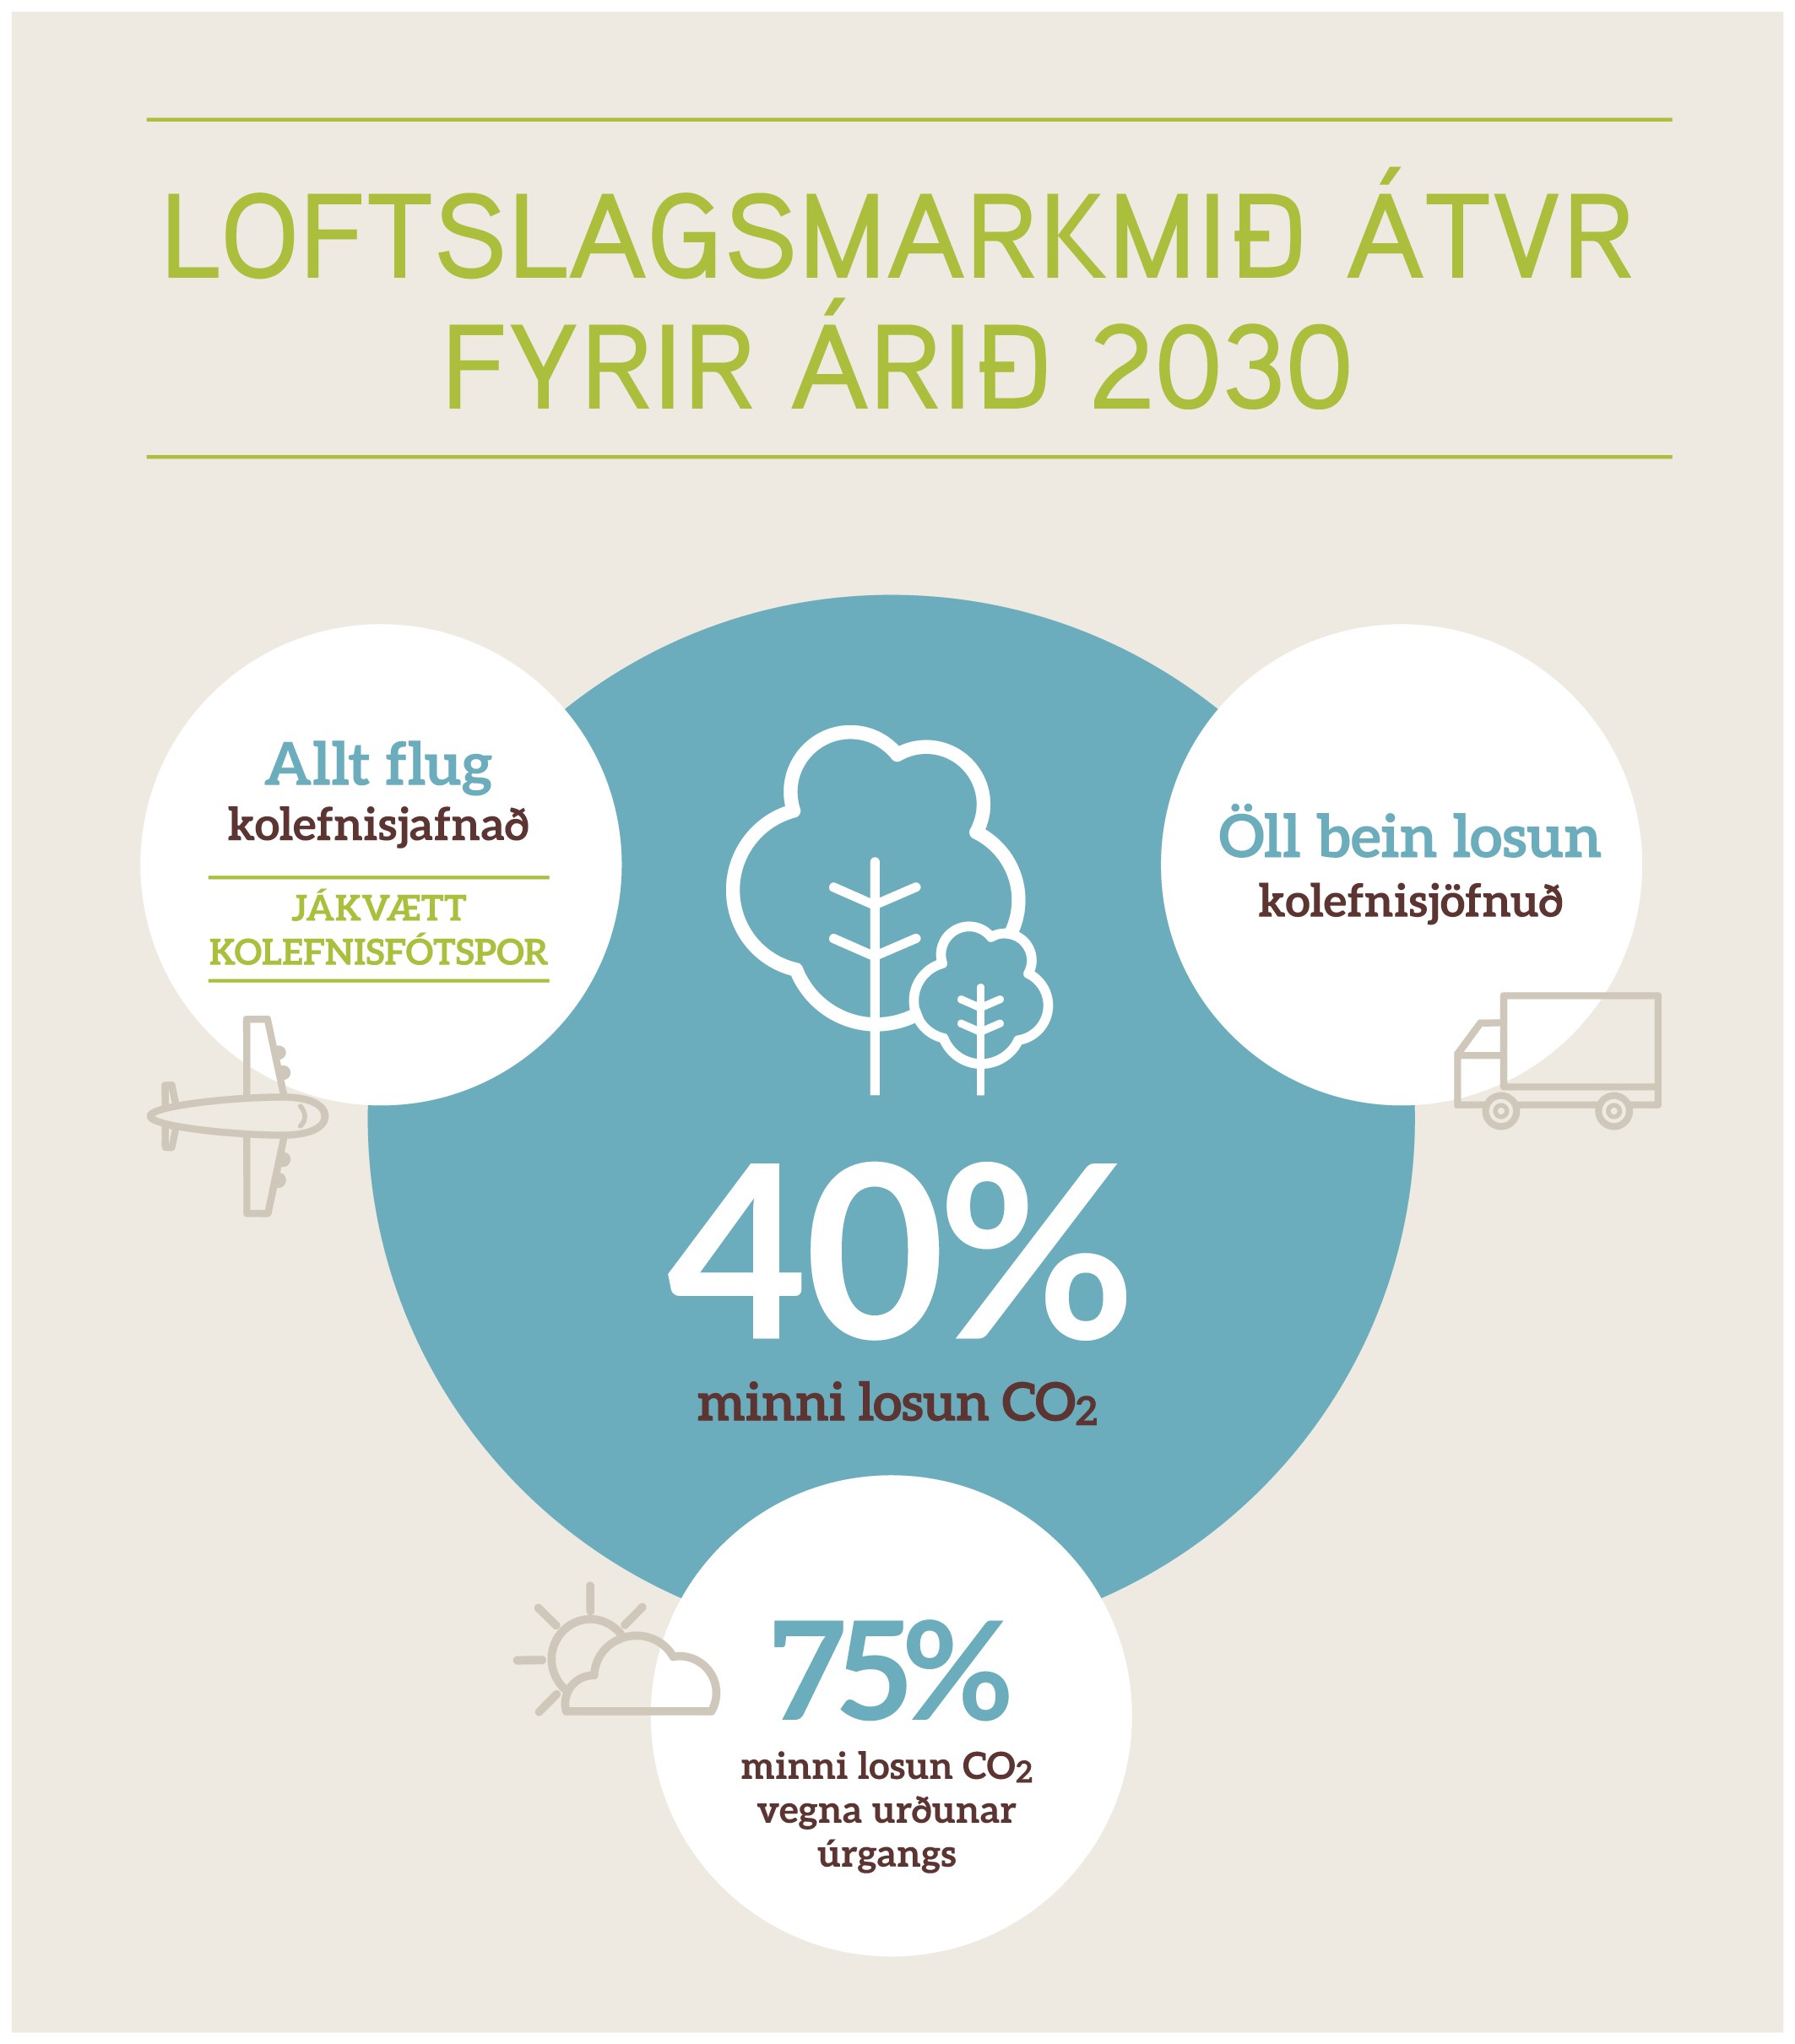 Loftlagsmarkmið ÁTVR fyrir árið 2030